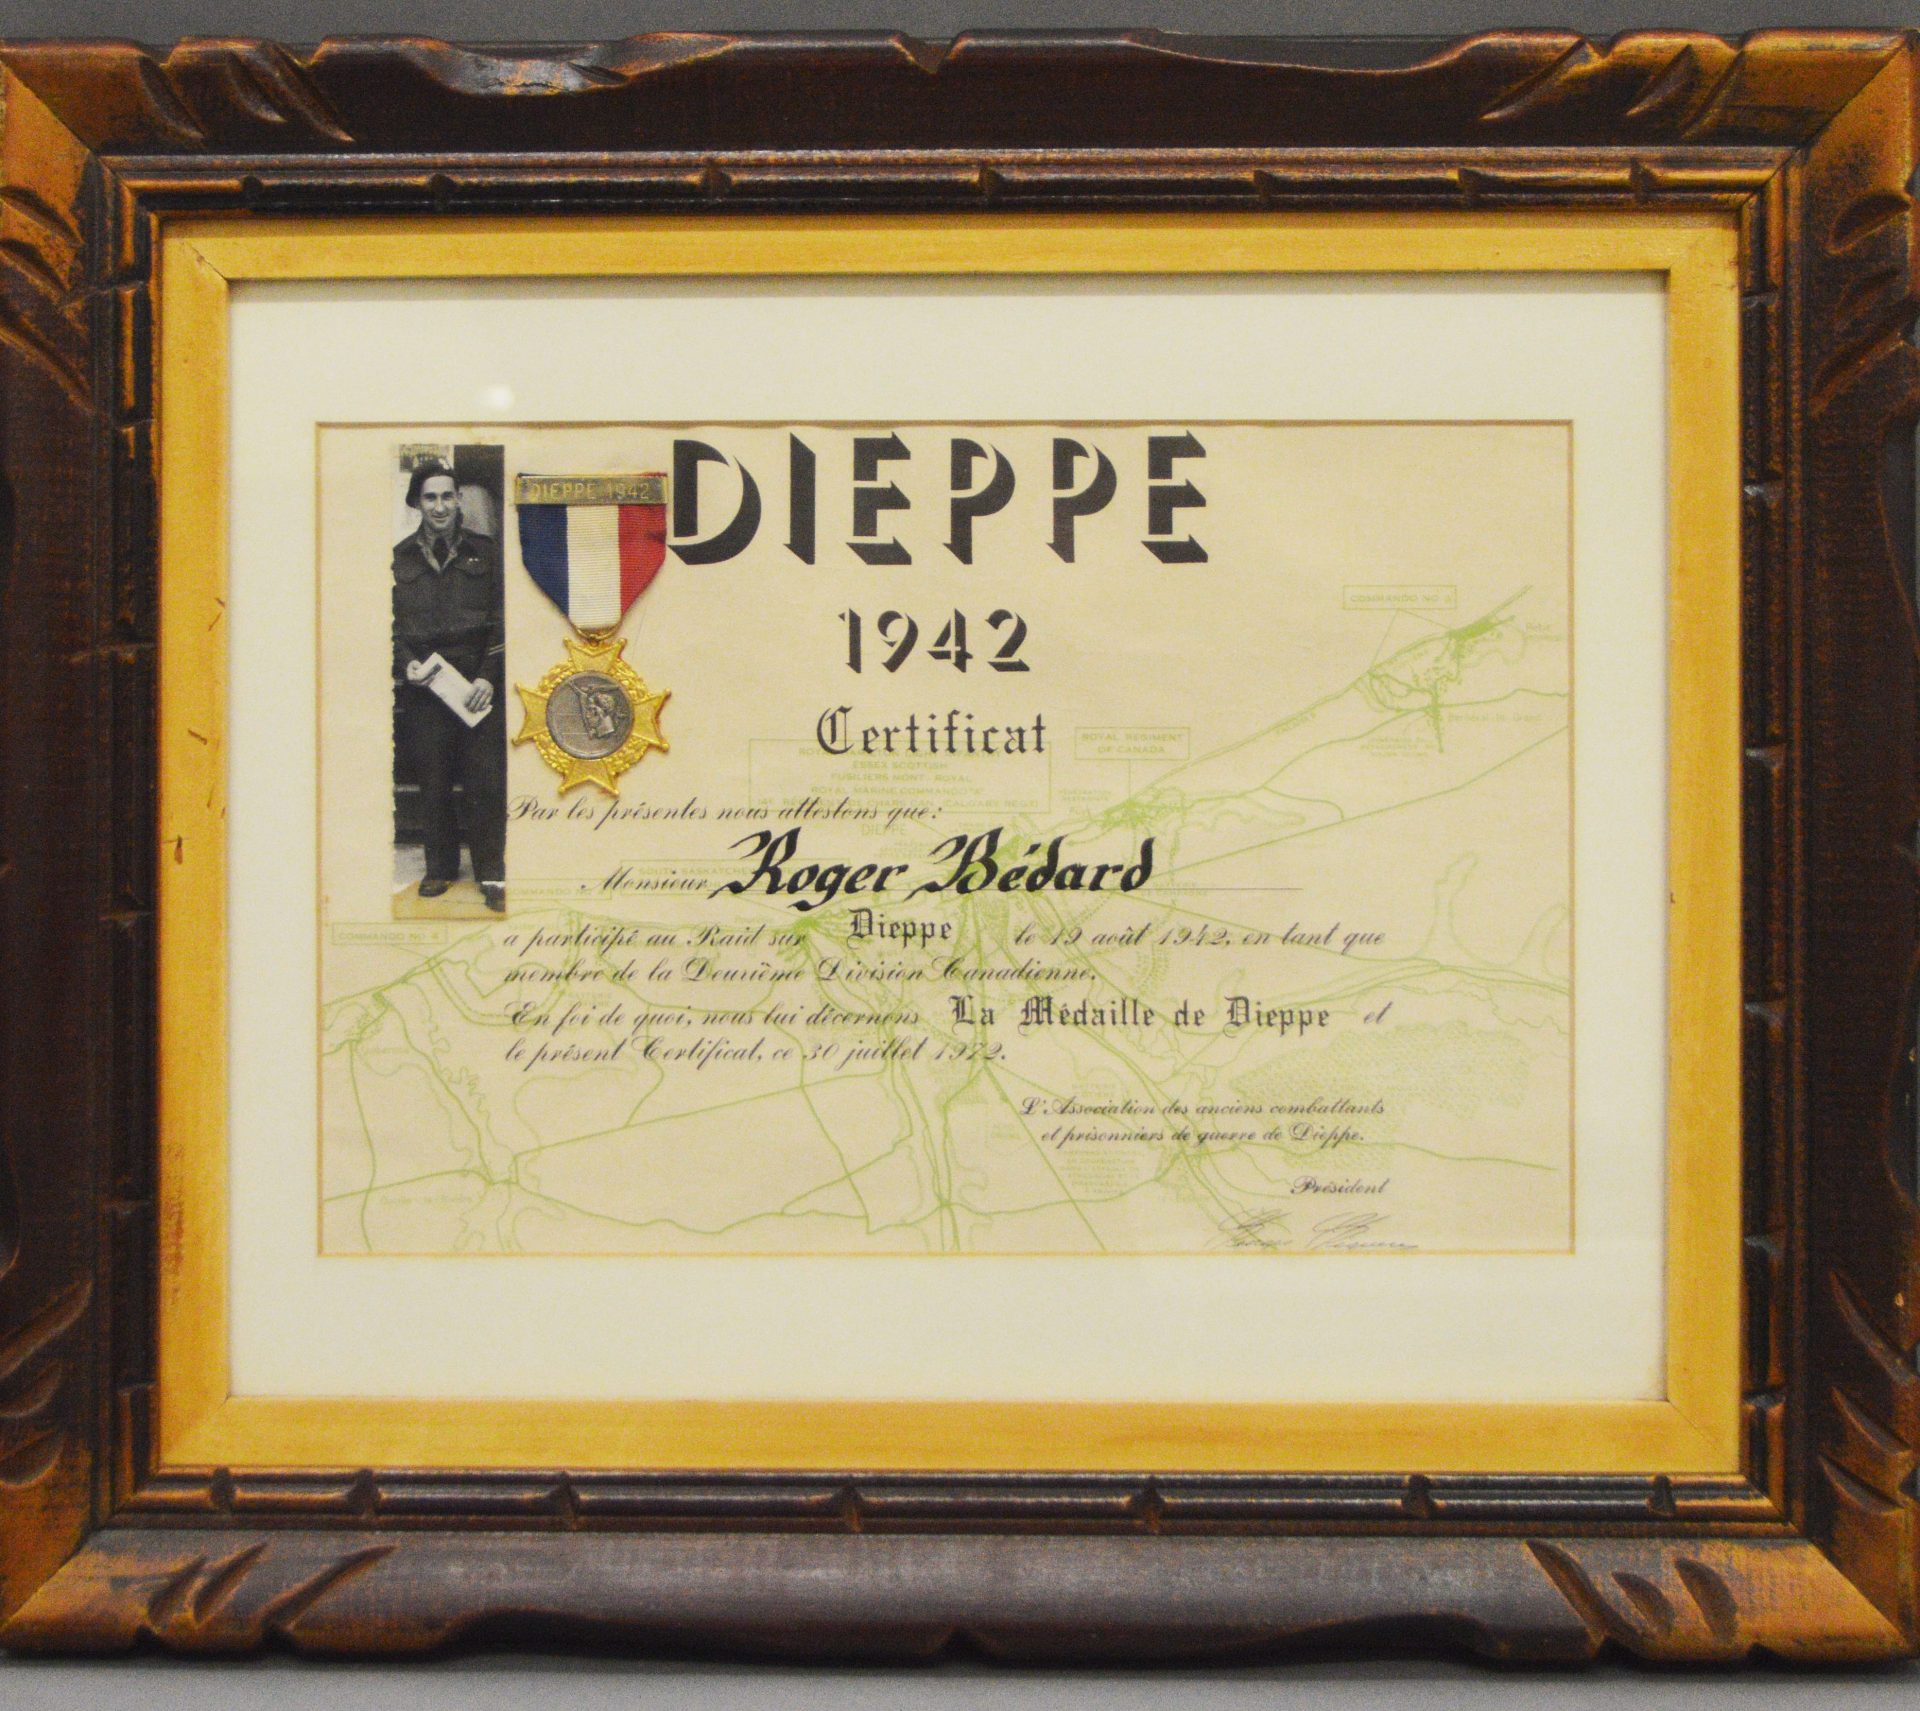 Certificat émis en 1972 par l’Association des anciens combattants, souligne la participation de Roger Bédard en tant que membre de la Deuxième division canadienne au raid de Dieppe le 19 août 1942.